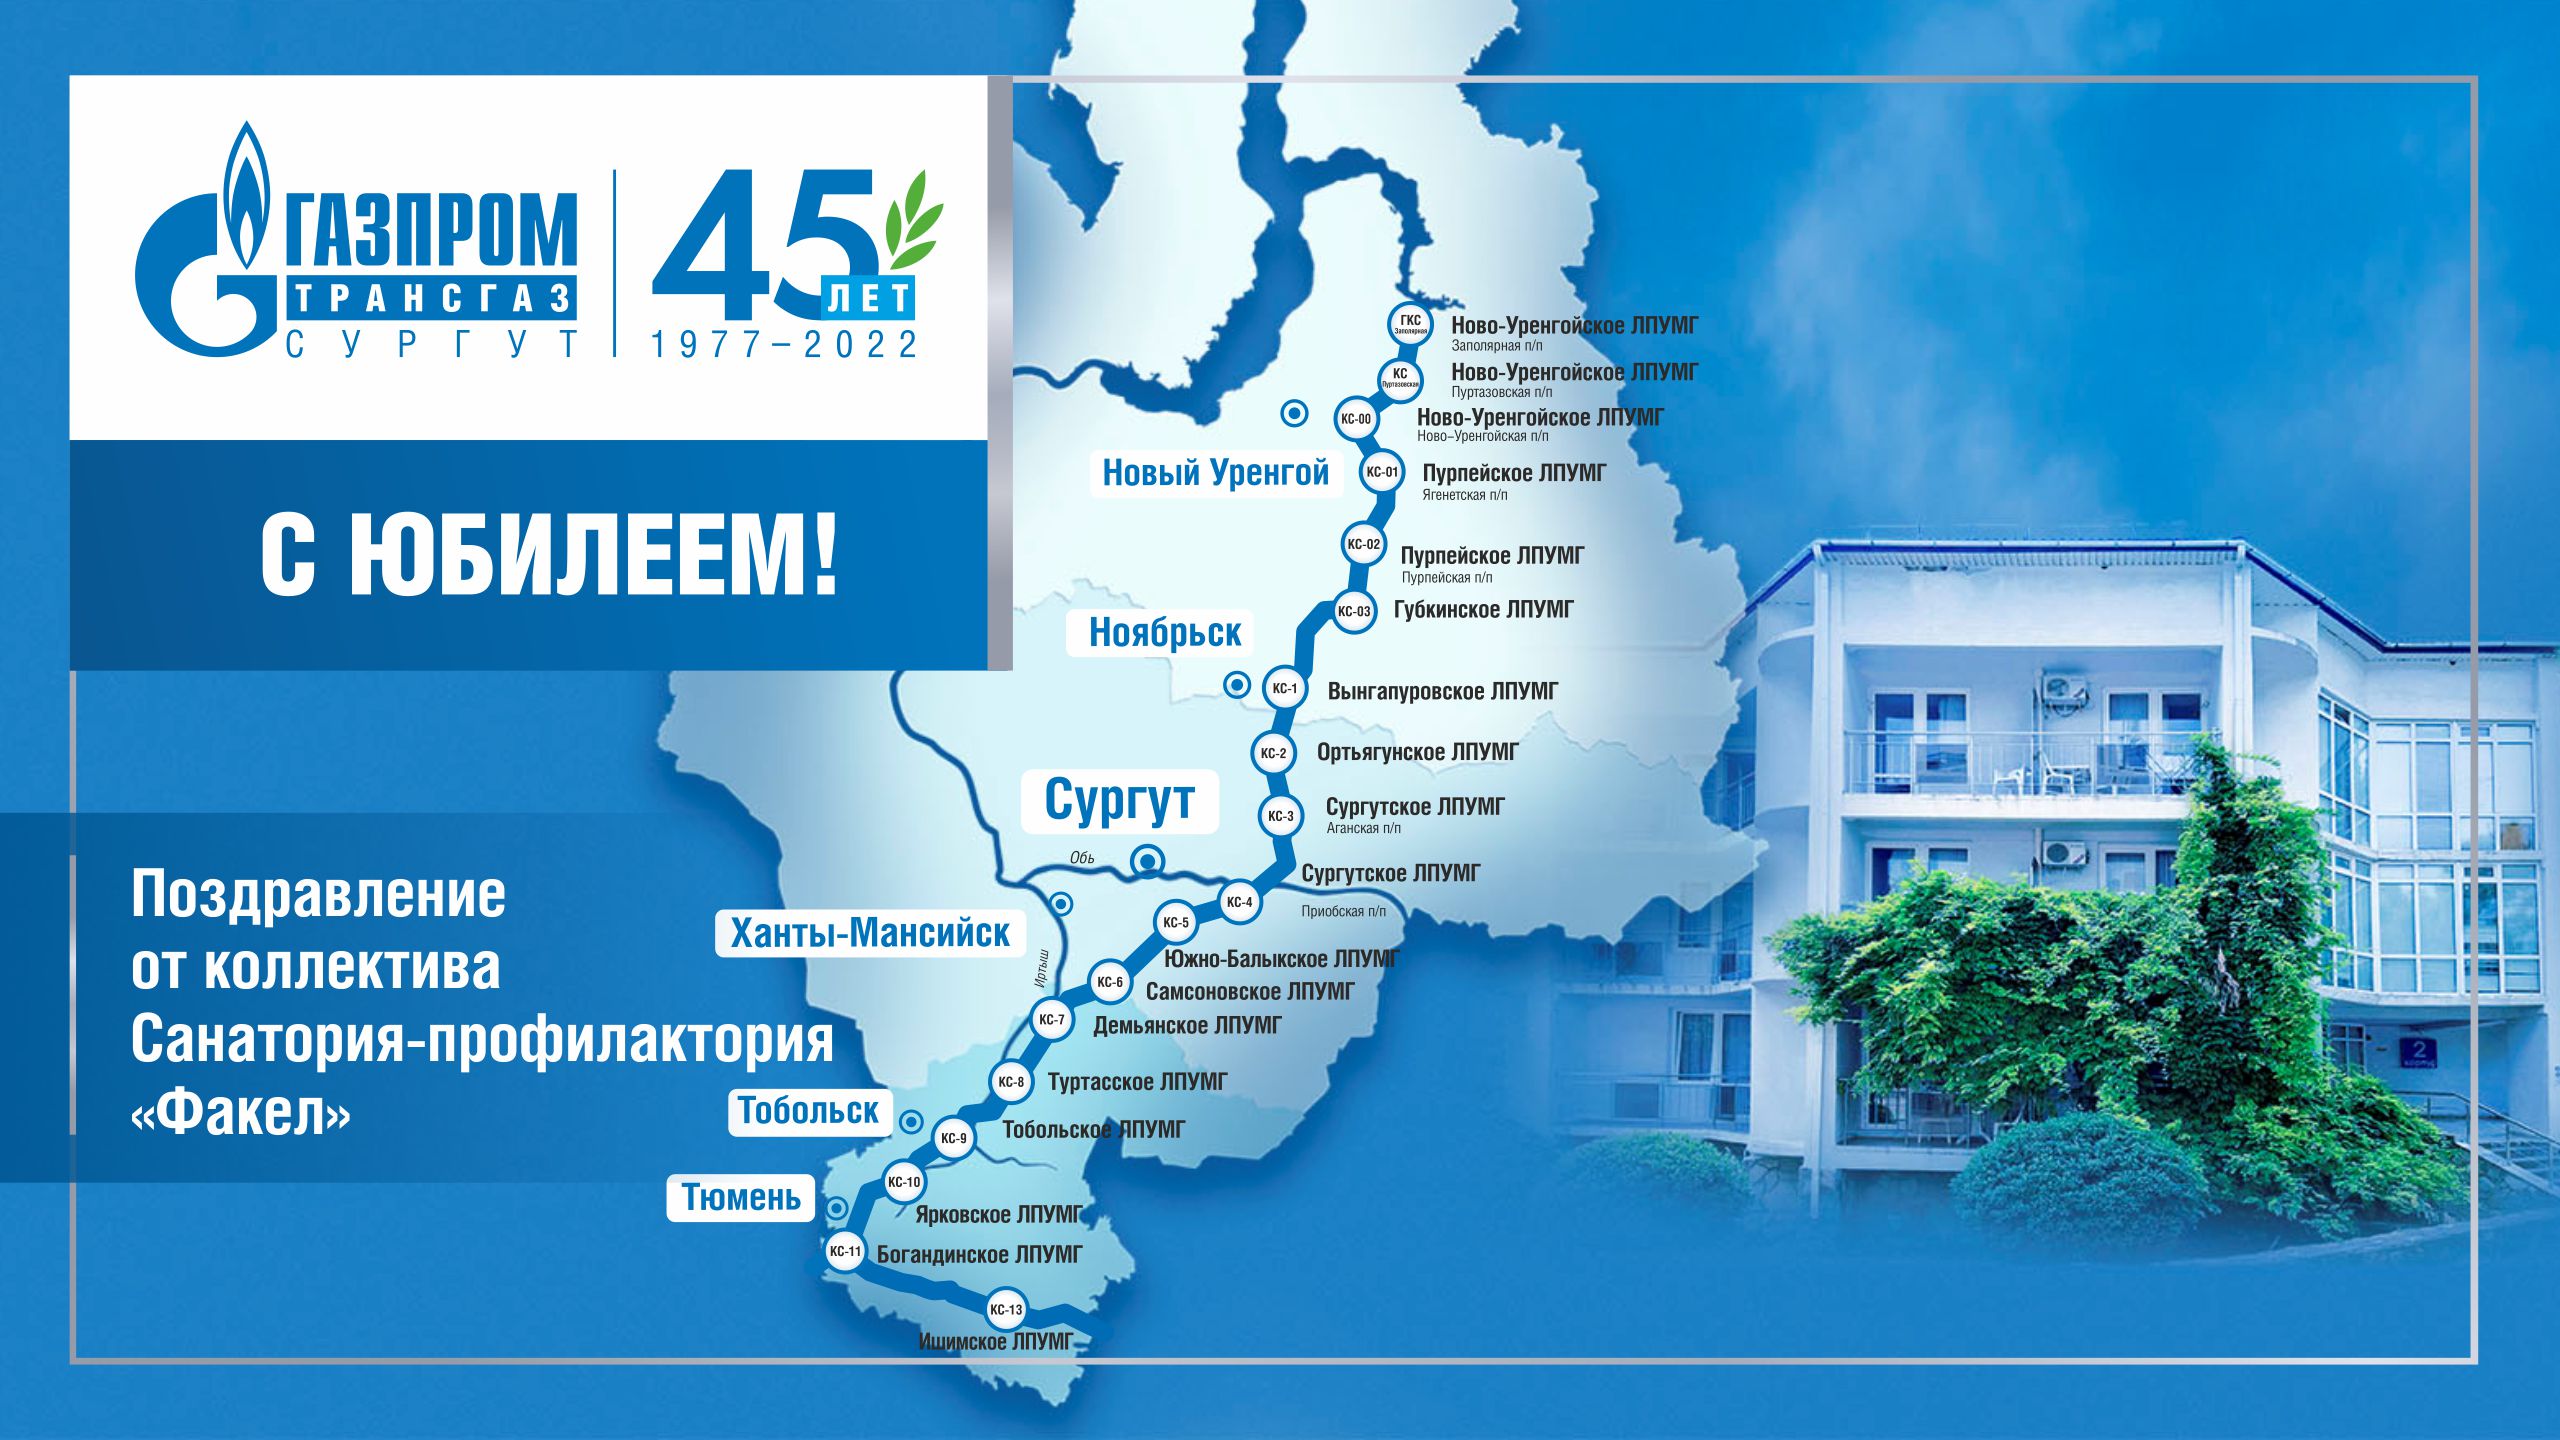 Газпром трансгаз Сургут 45 лет